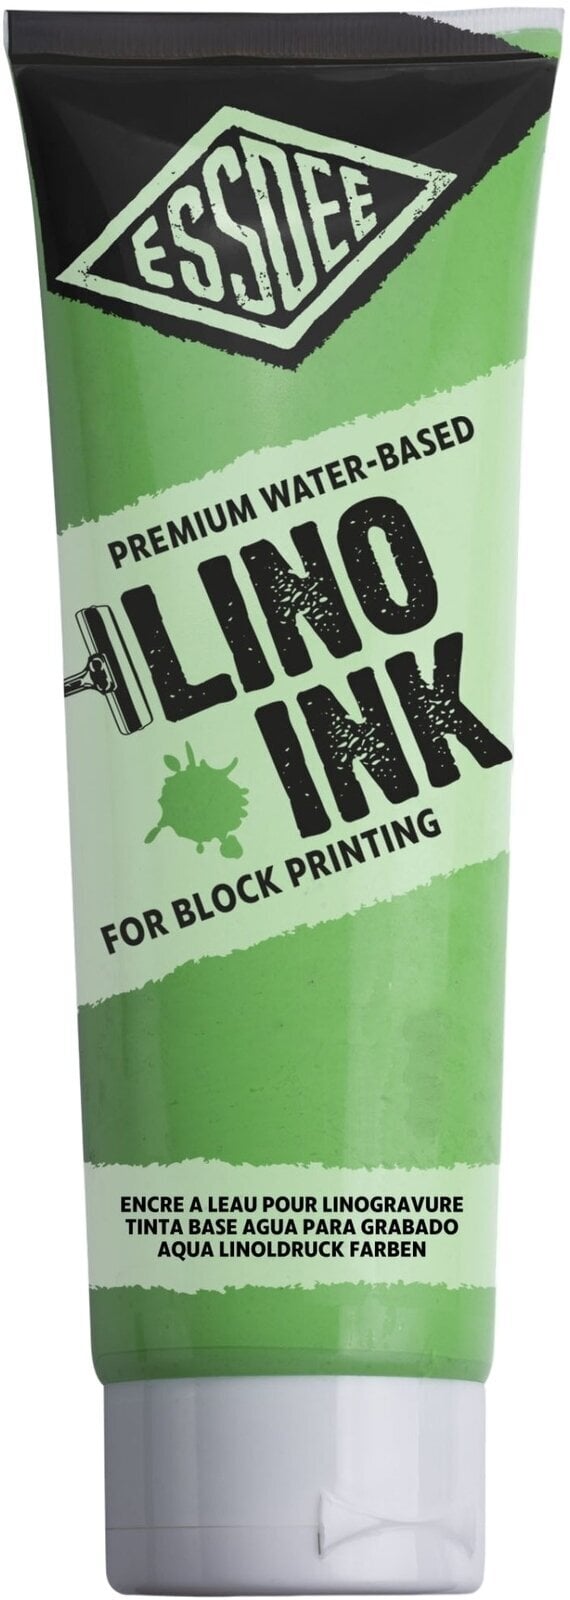 Pintura para linograbado Essdee Block Printing Ink Pintura para linograbado Fluorescent Green 300 ml